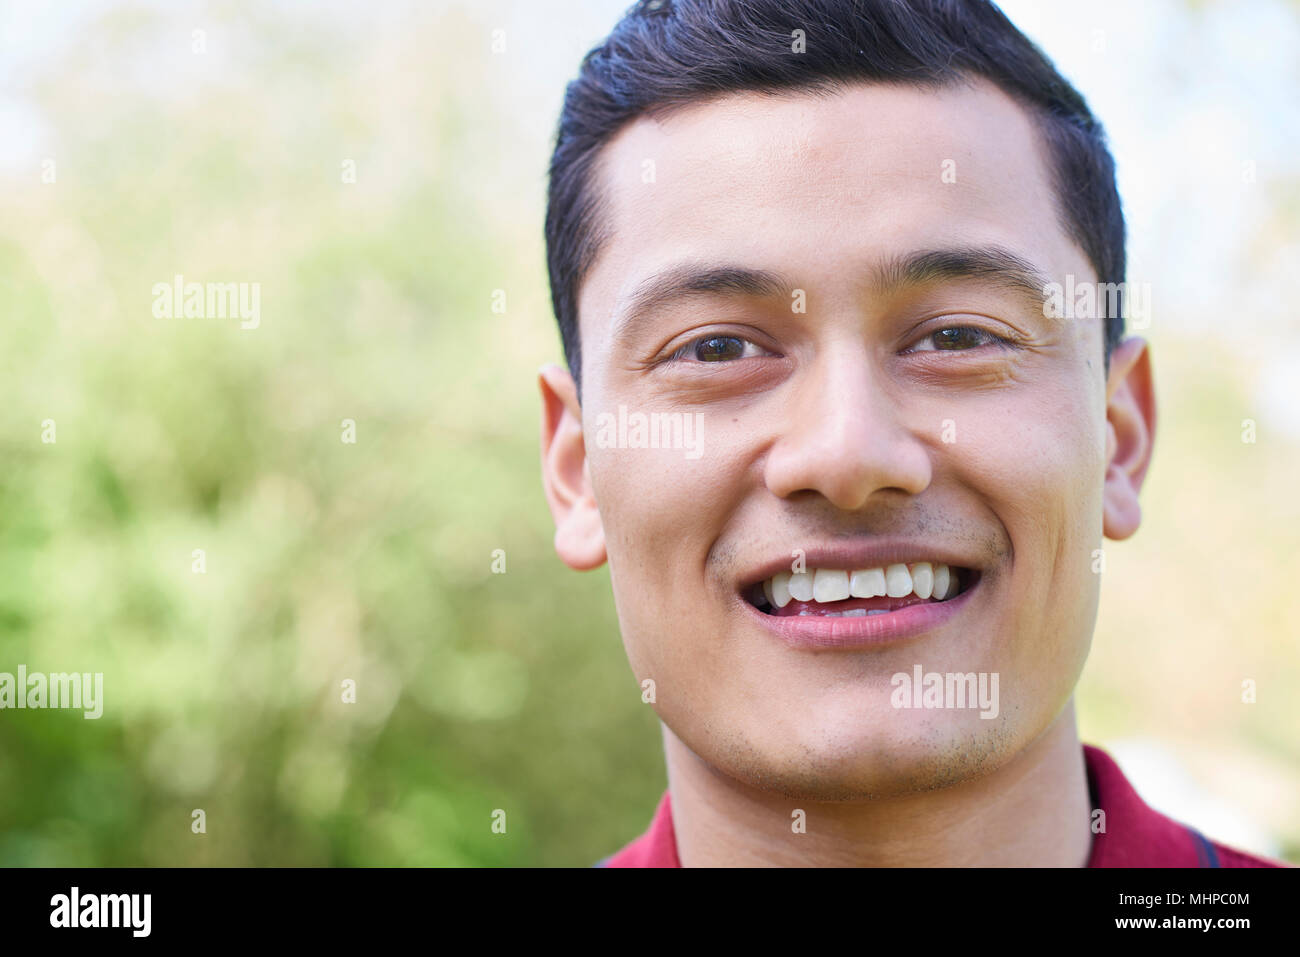 La tête et les épaules de plein air Portrait Of Smiling Young Man Banque D'Images